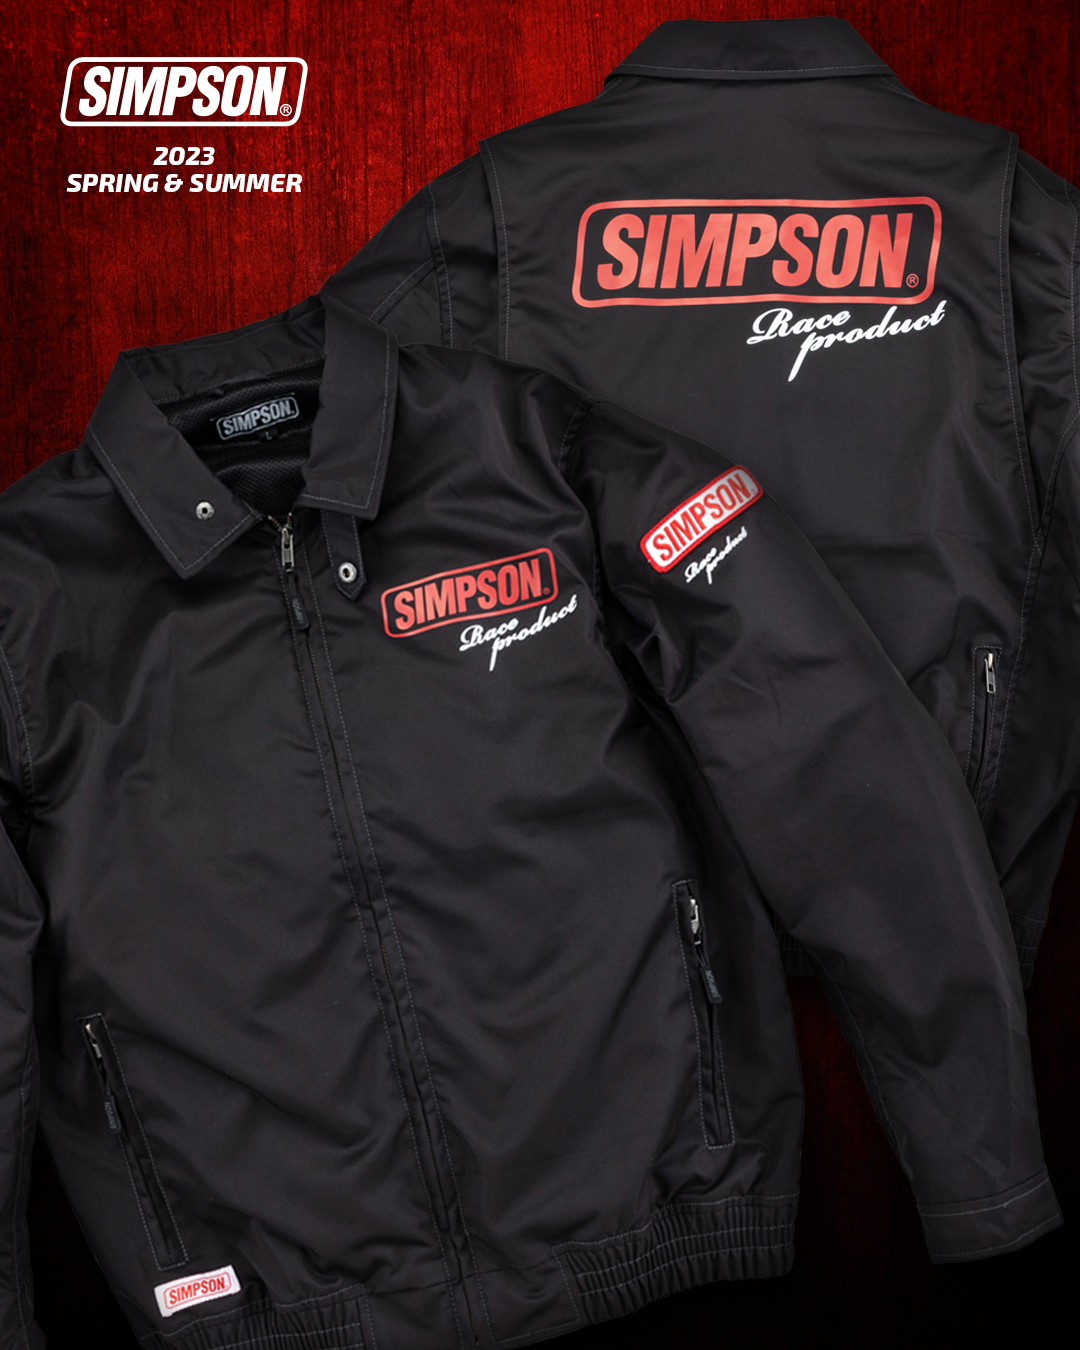 セール品 シンプソンジャケット 春夏モデル NSM-C07 Simpson 2023SS 